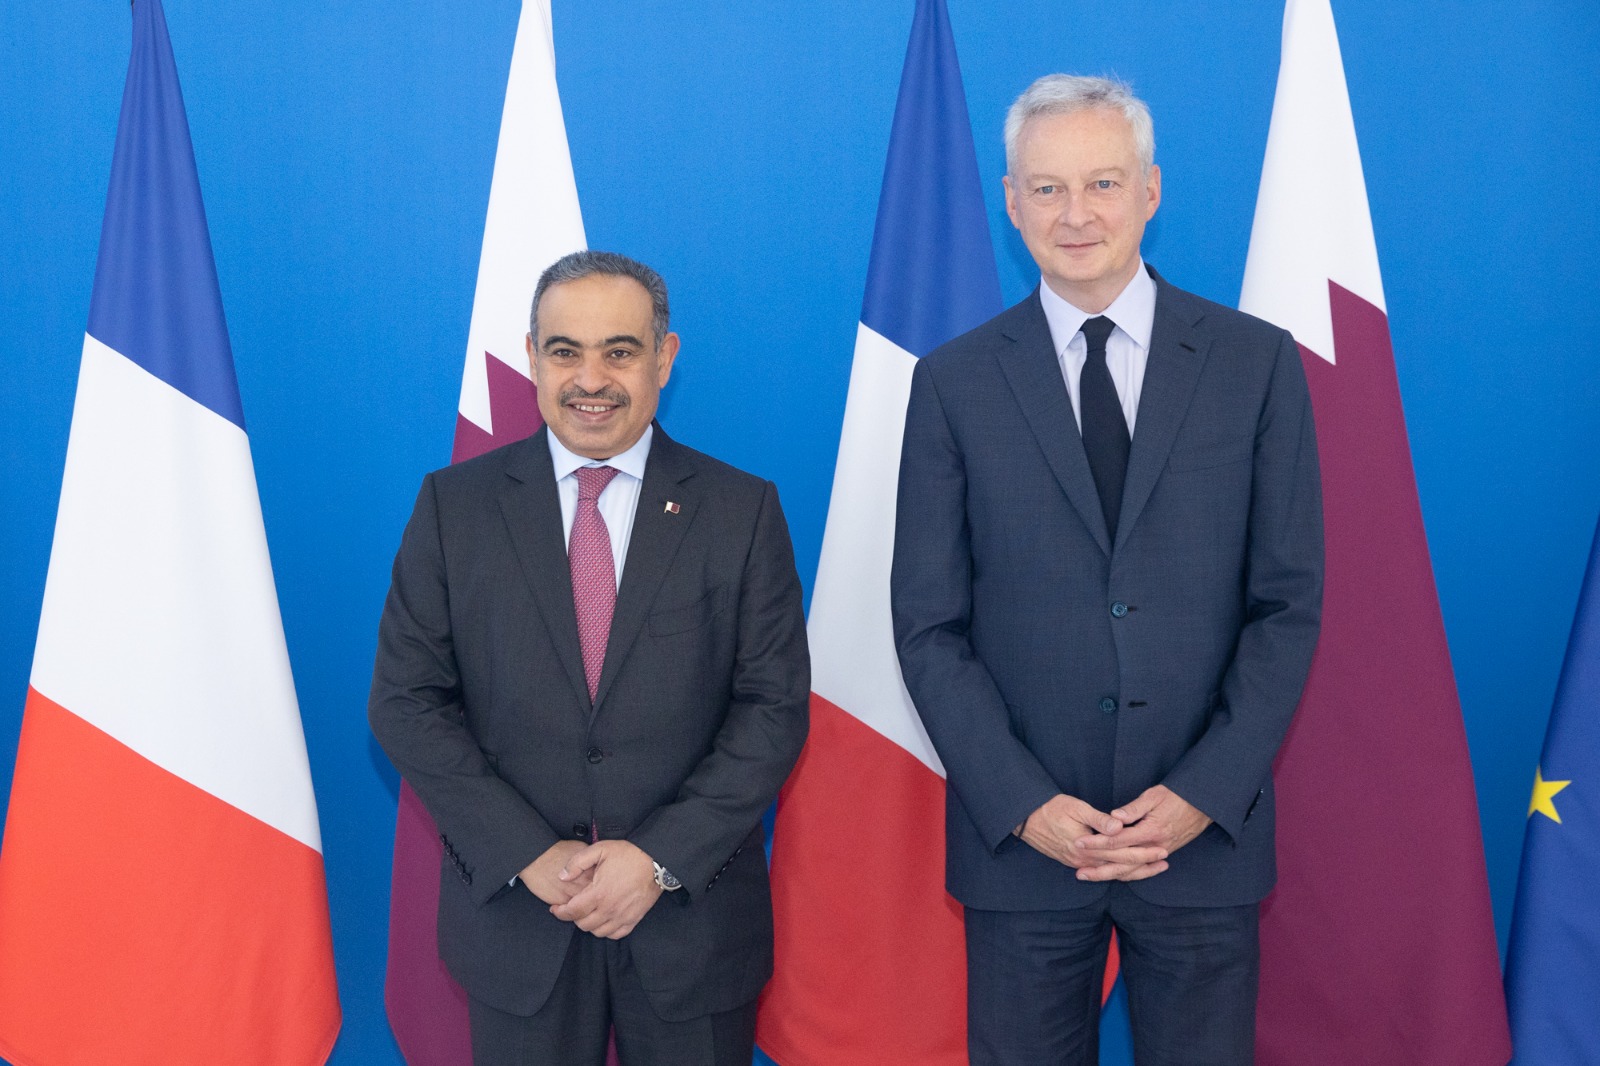 وزير المالية يجتمع مع وزير الاقتصاد والمالية الفرنسي